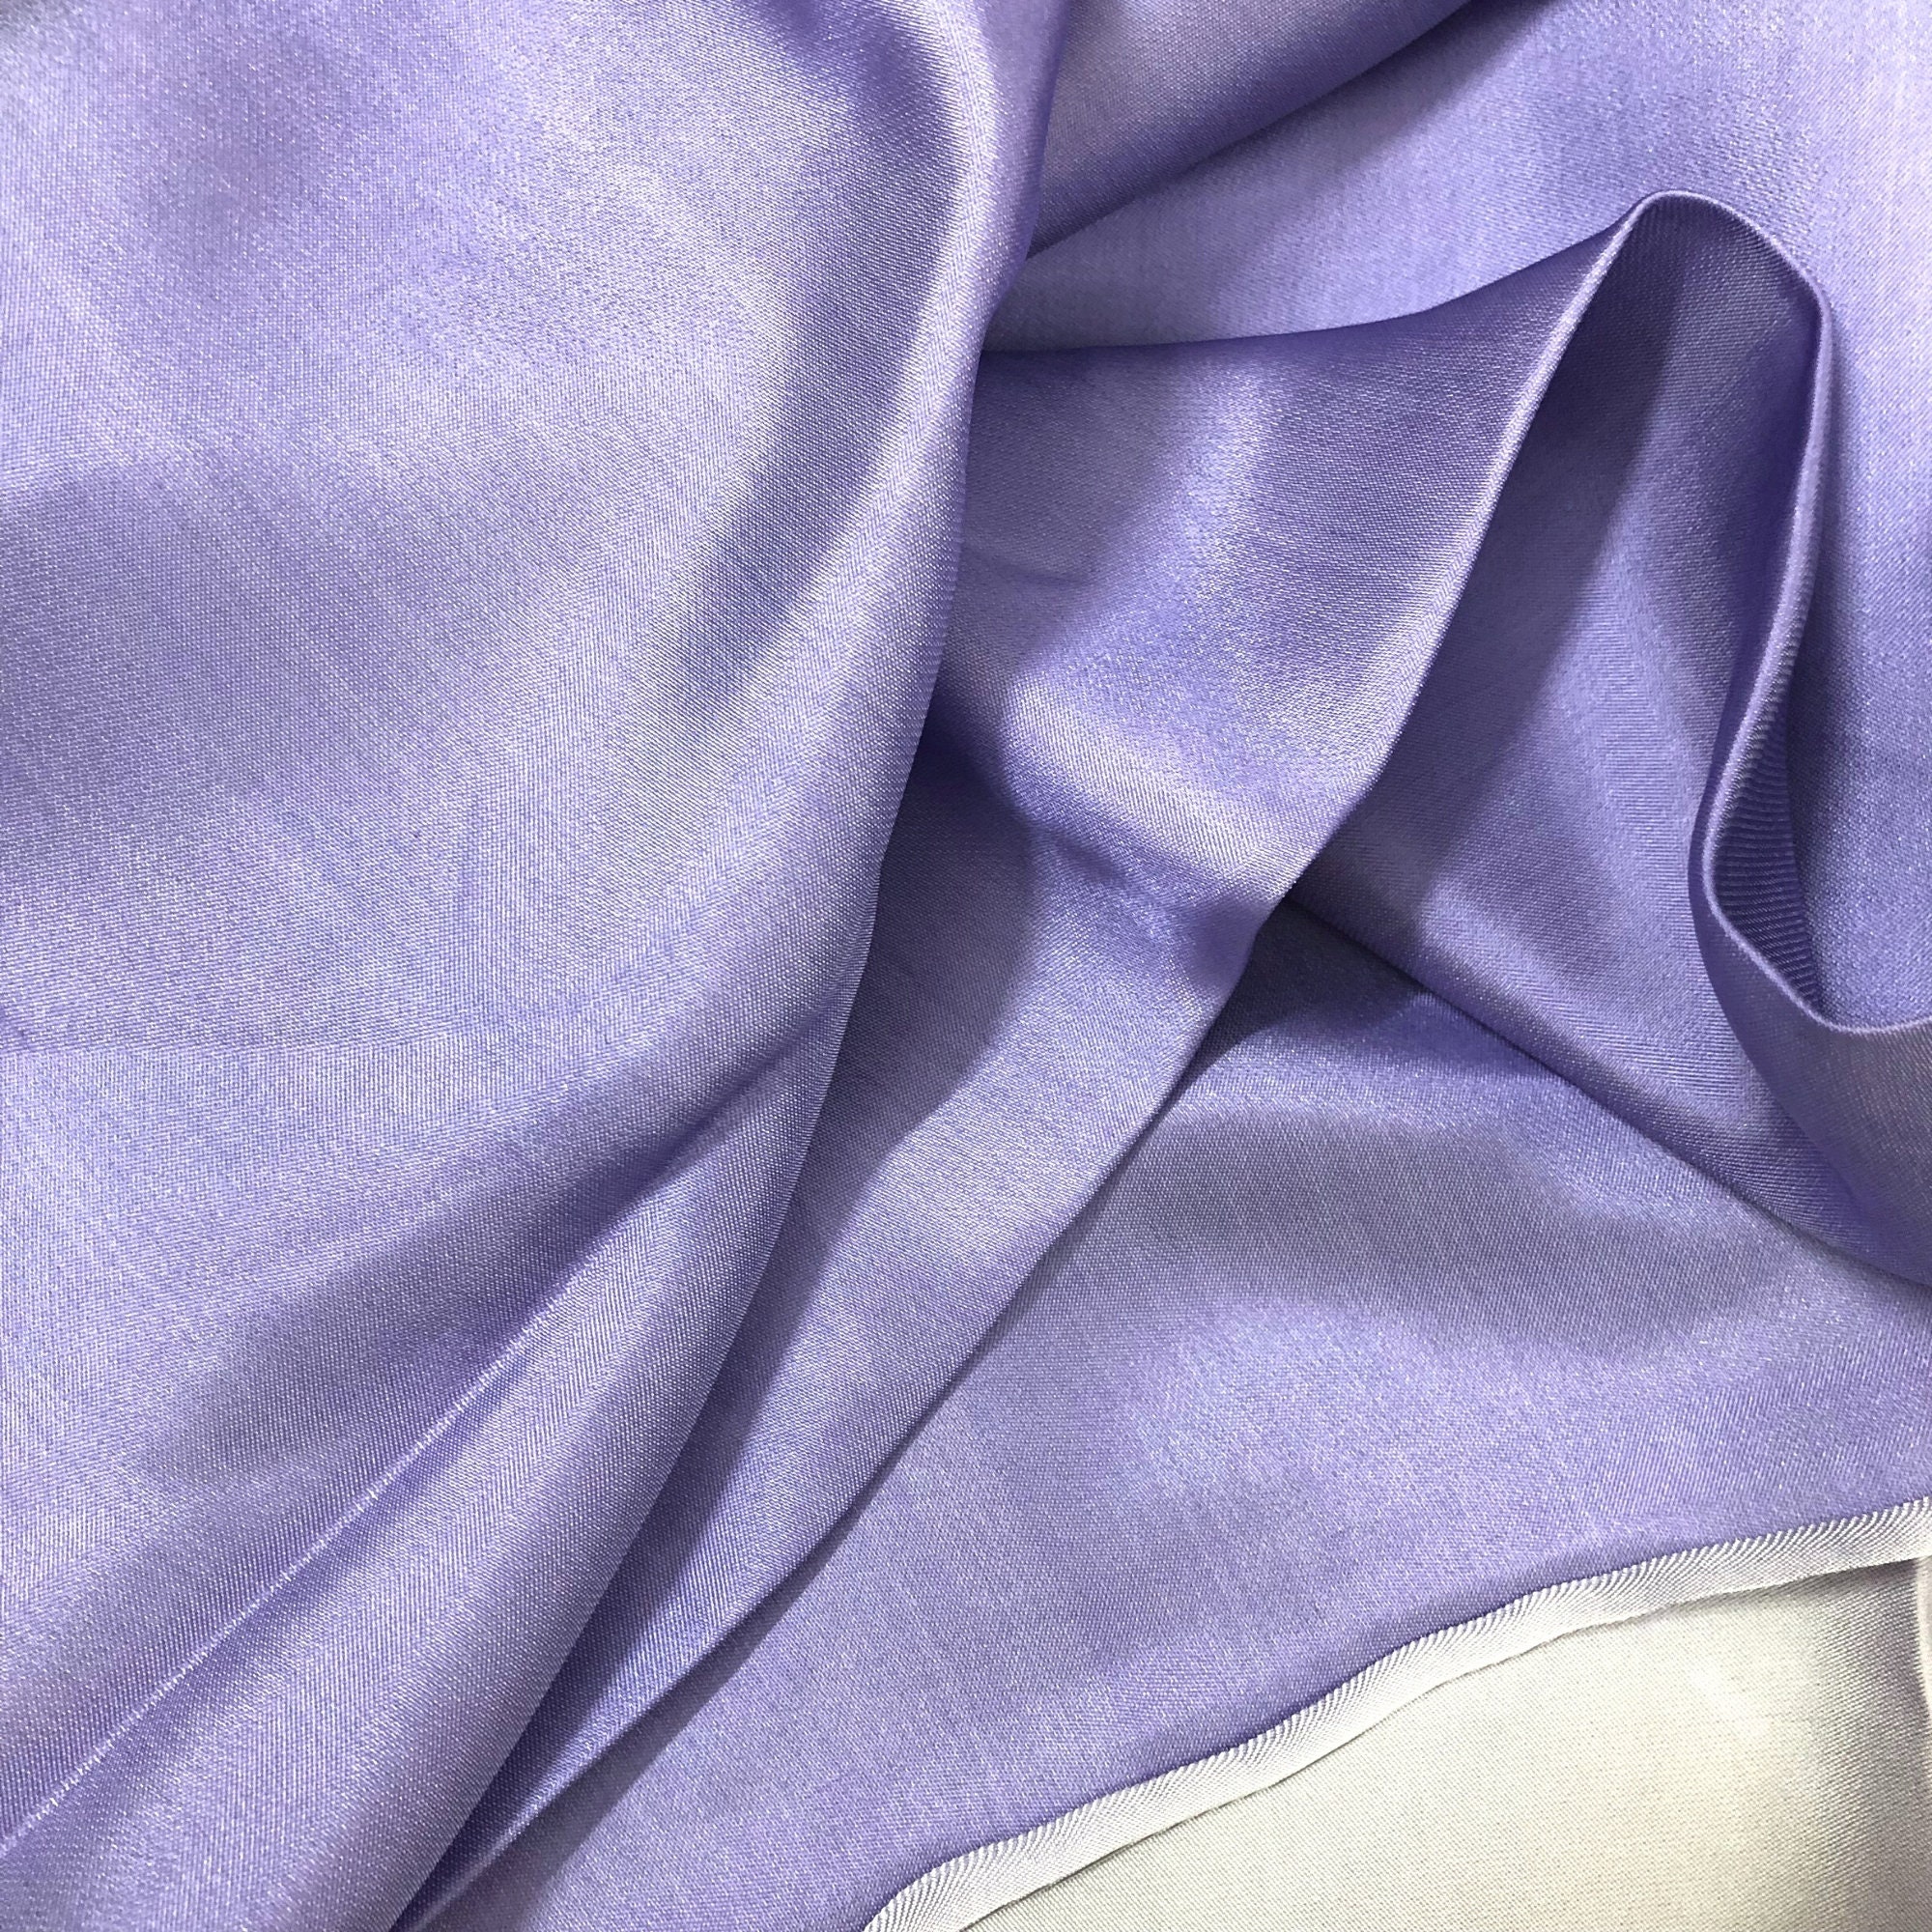 Vải Lụa Tơ Tằm satin màu tím nhạt may áo dài #mềm#mượt#nhẹ#thoáng, dệt thủ công, khổ rộng 90cm